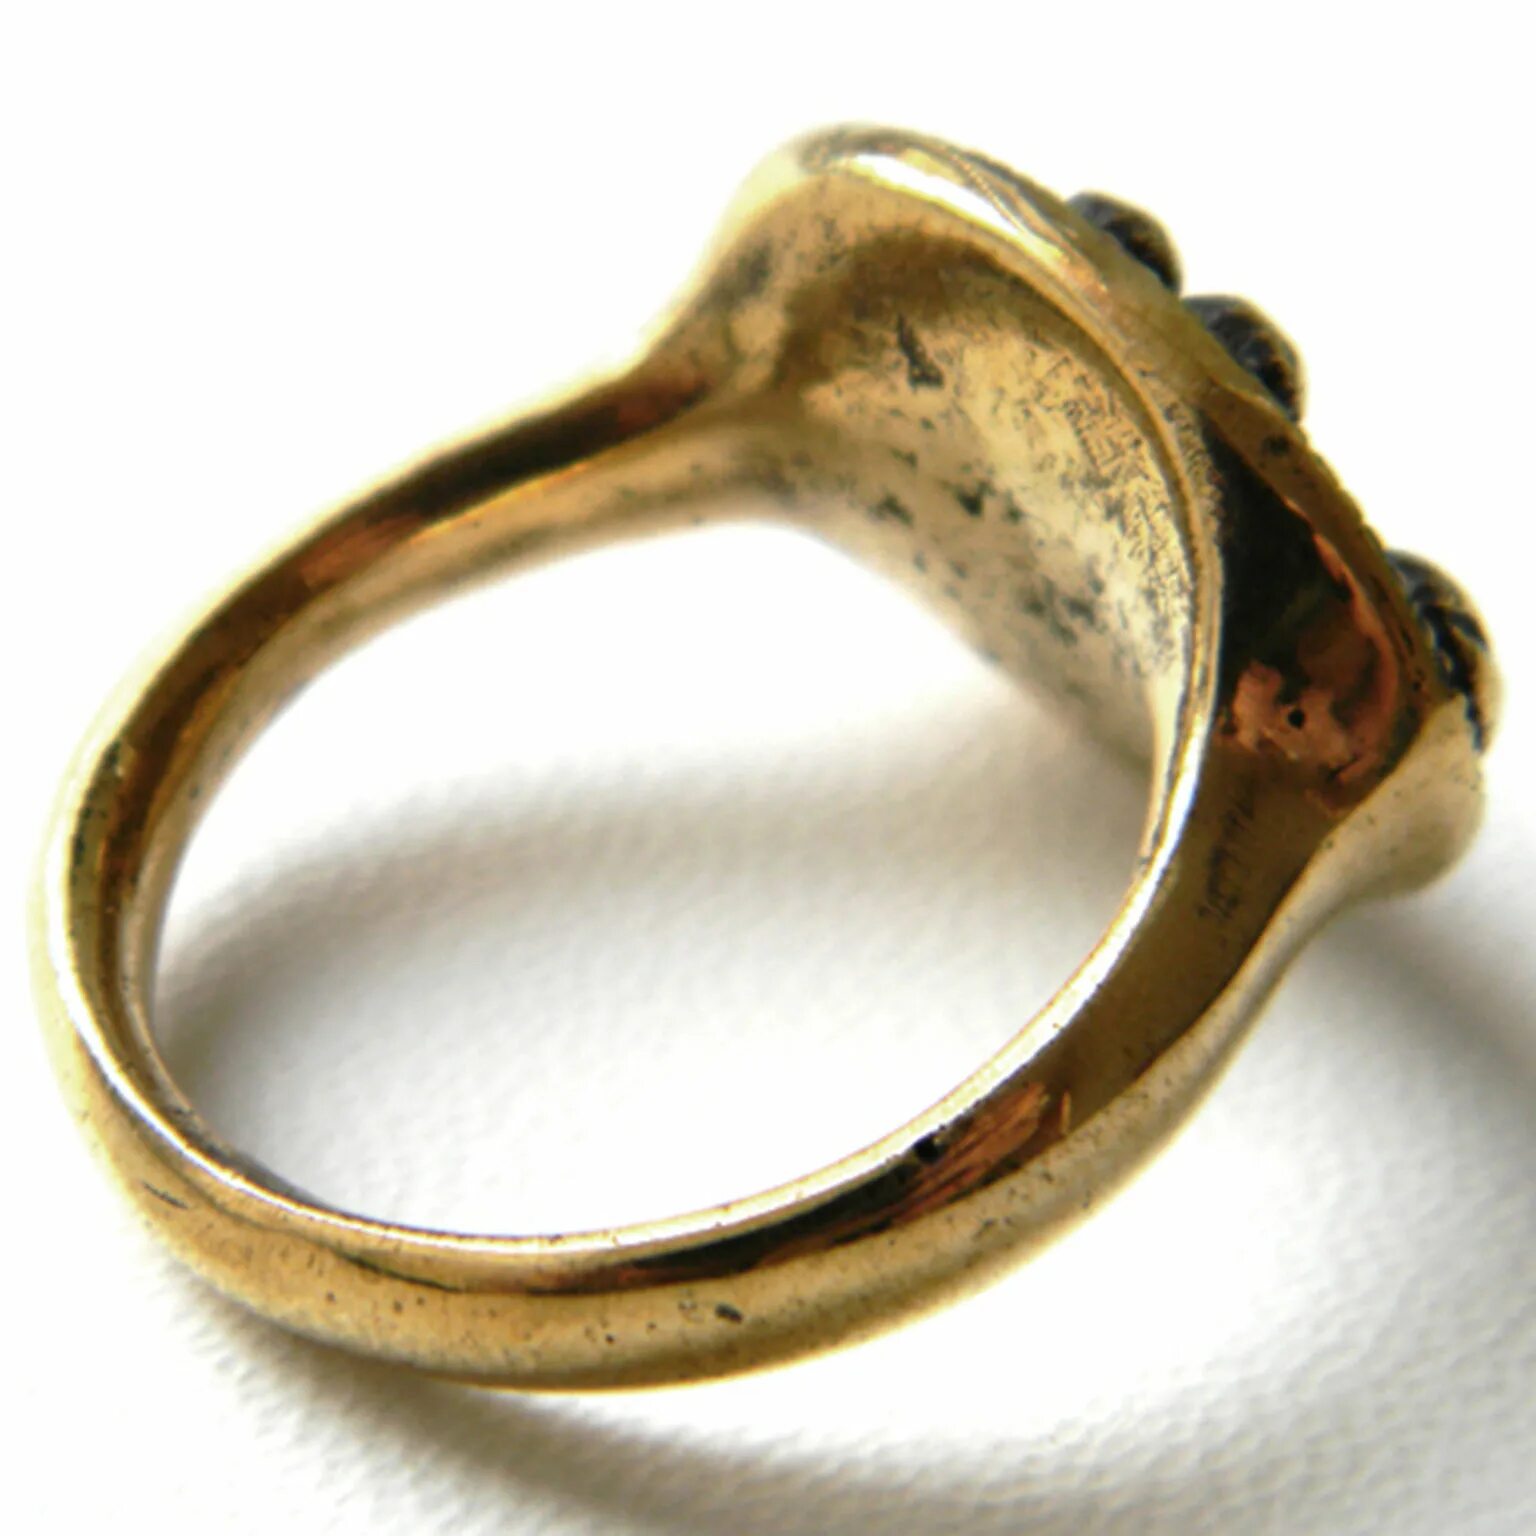 Бронзовое кольцо история жизни обычной семьи 14. Бронзовое кольцо. Бронзовый перстень. Кольцо из бронзы. Кольцо с рыбкой.